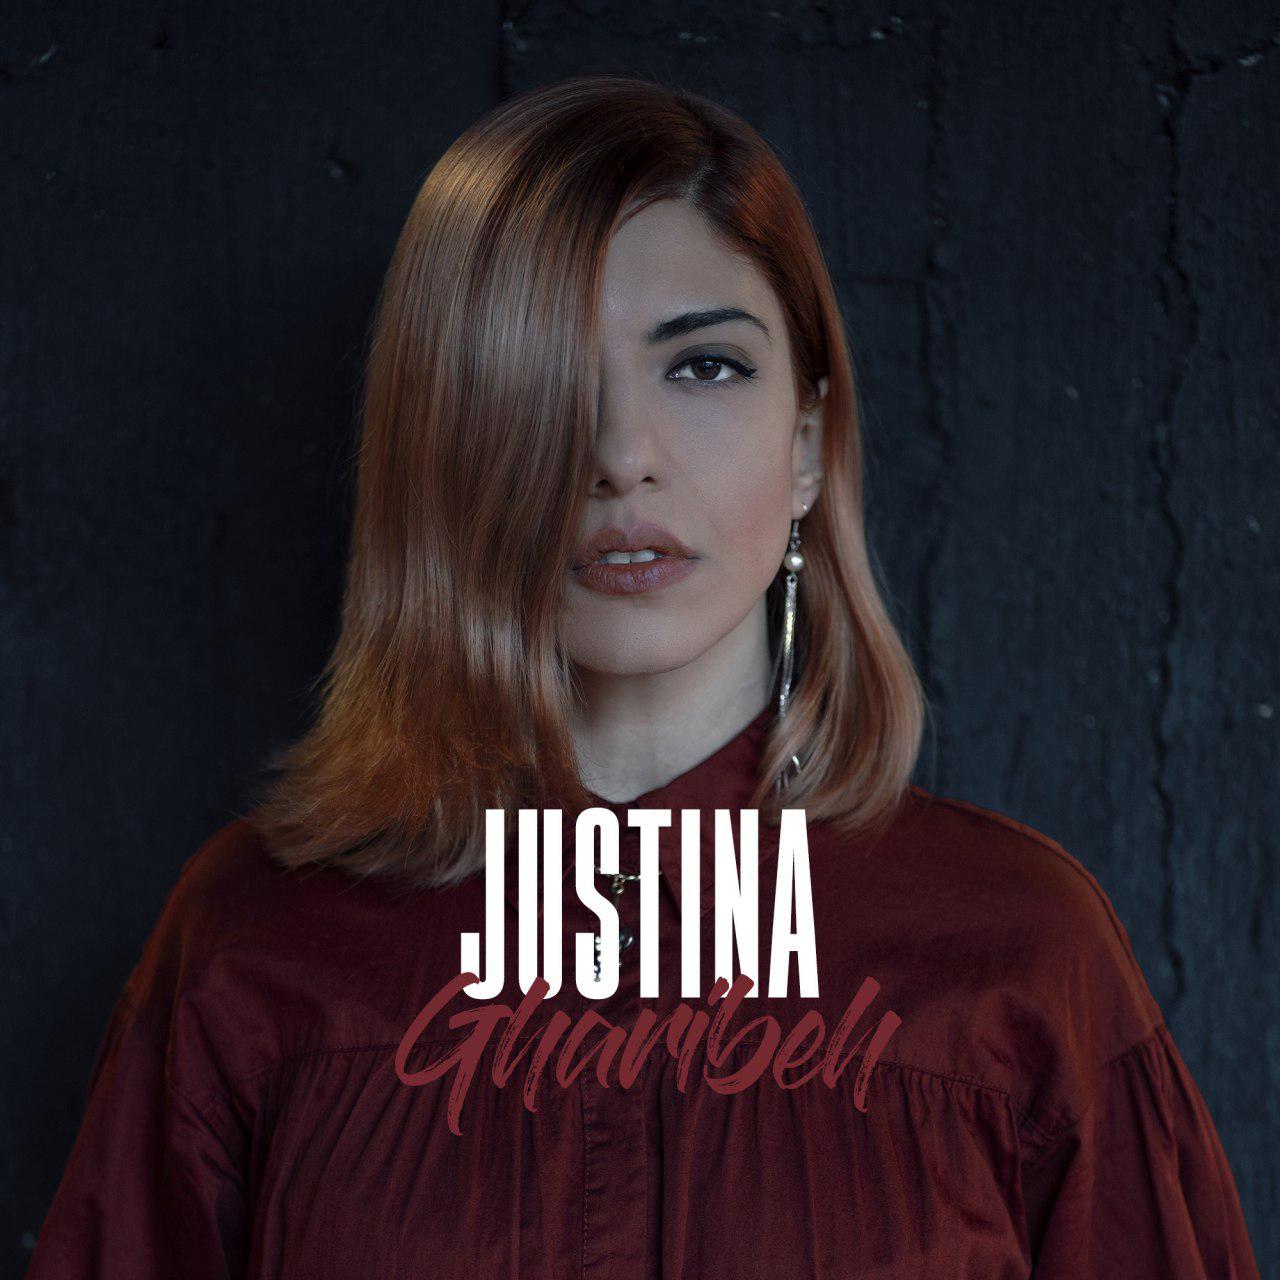  دانلود آهنگ جدید جاستینا - غریبه | Download New Music By Justina - Gharibeh